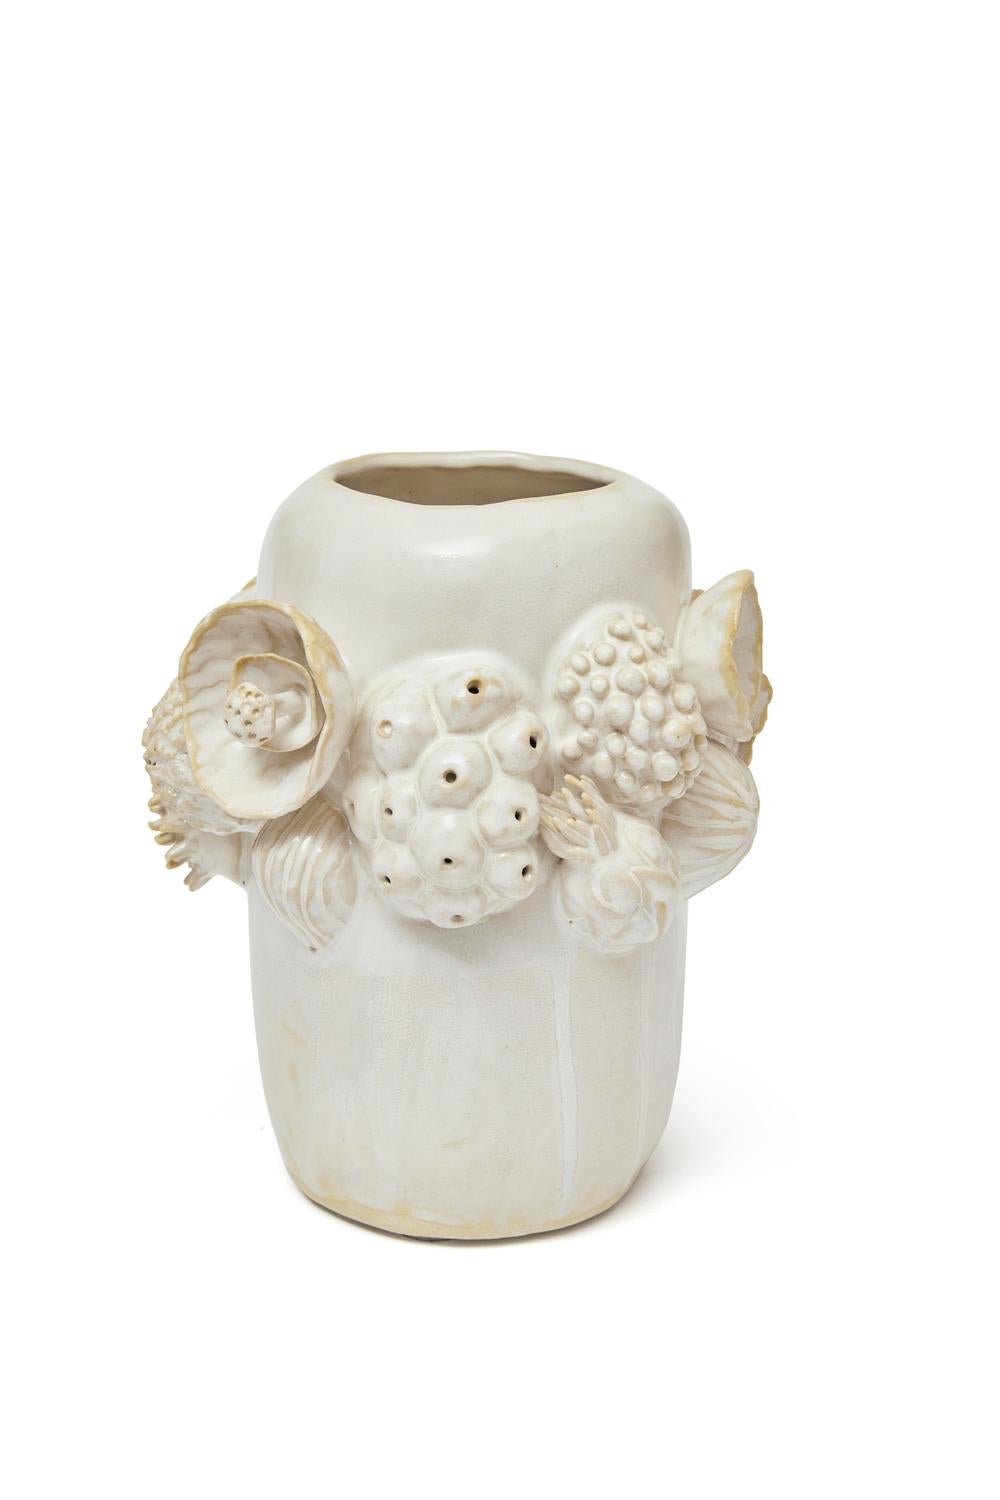 Trish DeMasi
Vase Botanica, 2021
Céramique émaillée
Mesures : 9 x 8 x 8 in.